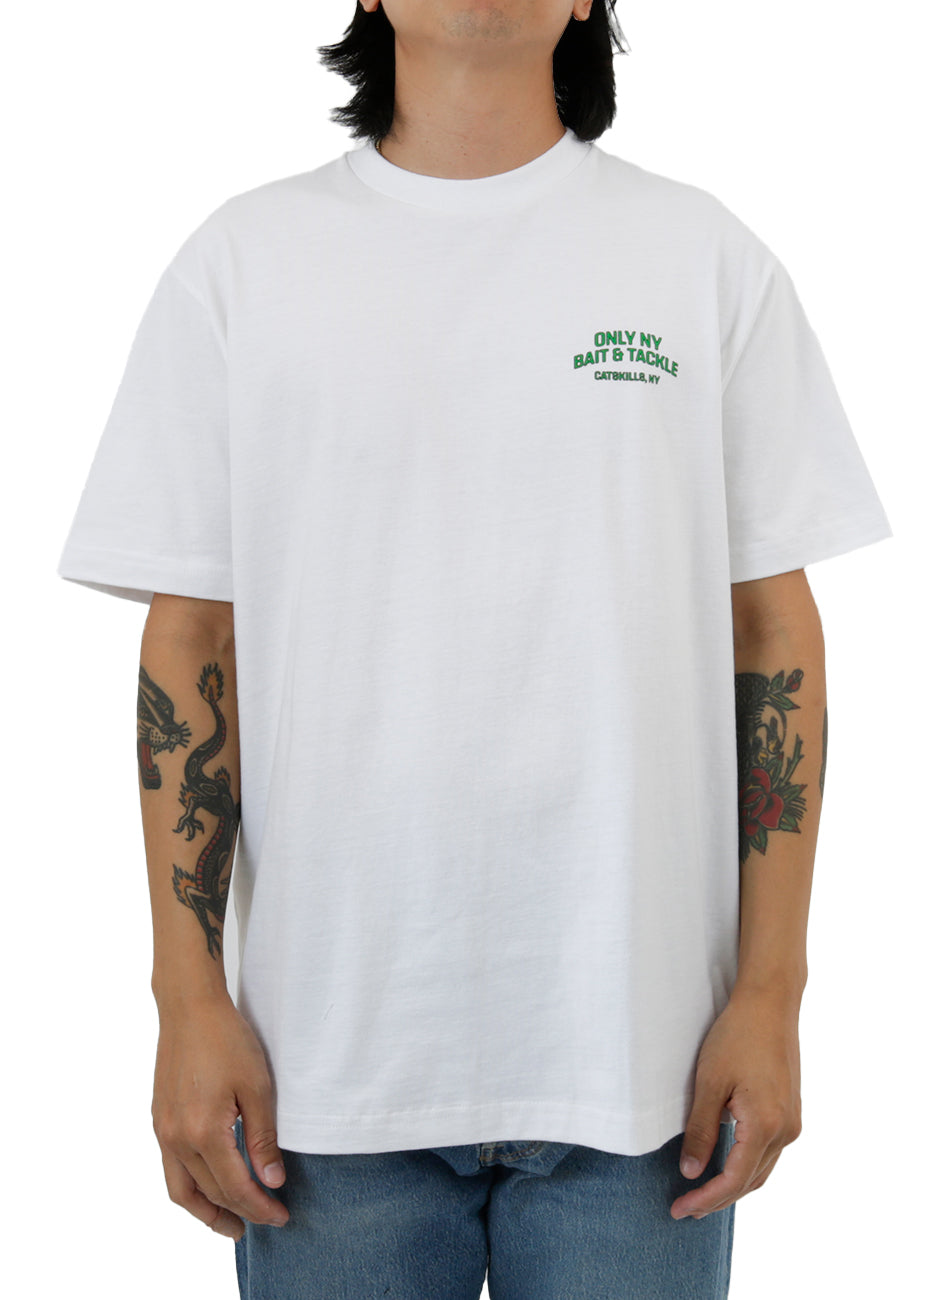 Catskills T-Shirt - White